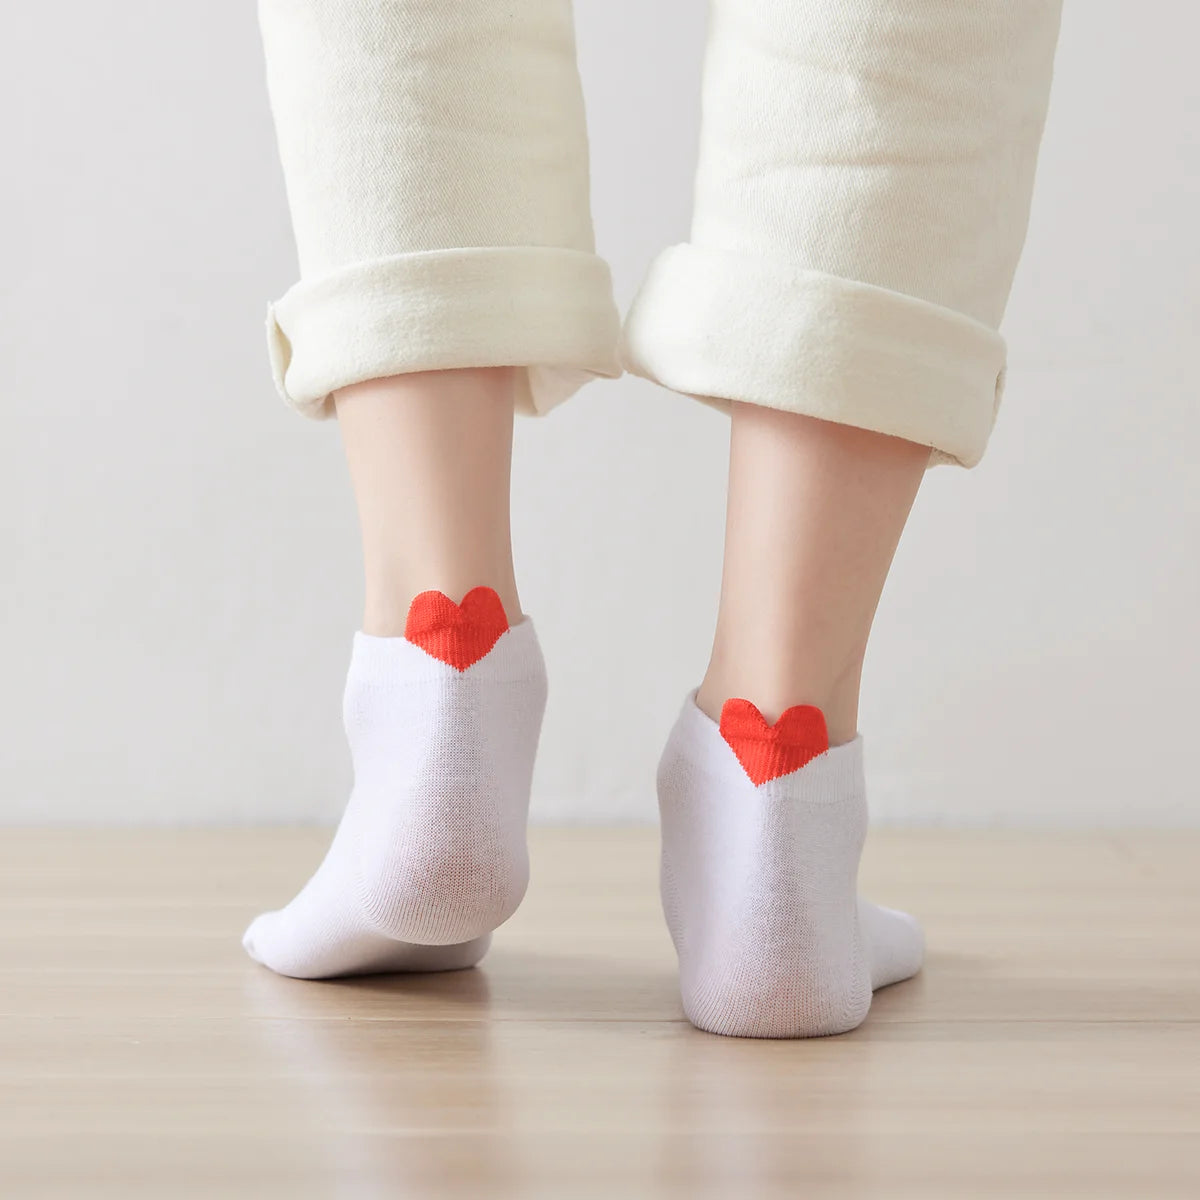 Chaussettes blanche en coton unis Coup de Coeur pour femme | Chaussettes douces et respirantes | Un cadeau parfait pour les femmes de tous âges | Disponibles à un prix abordable.